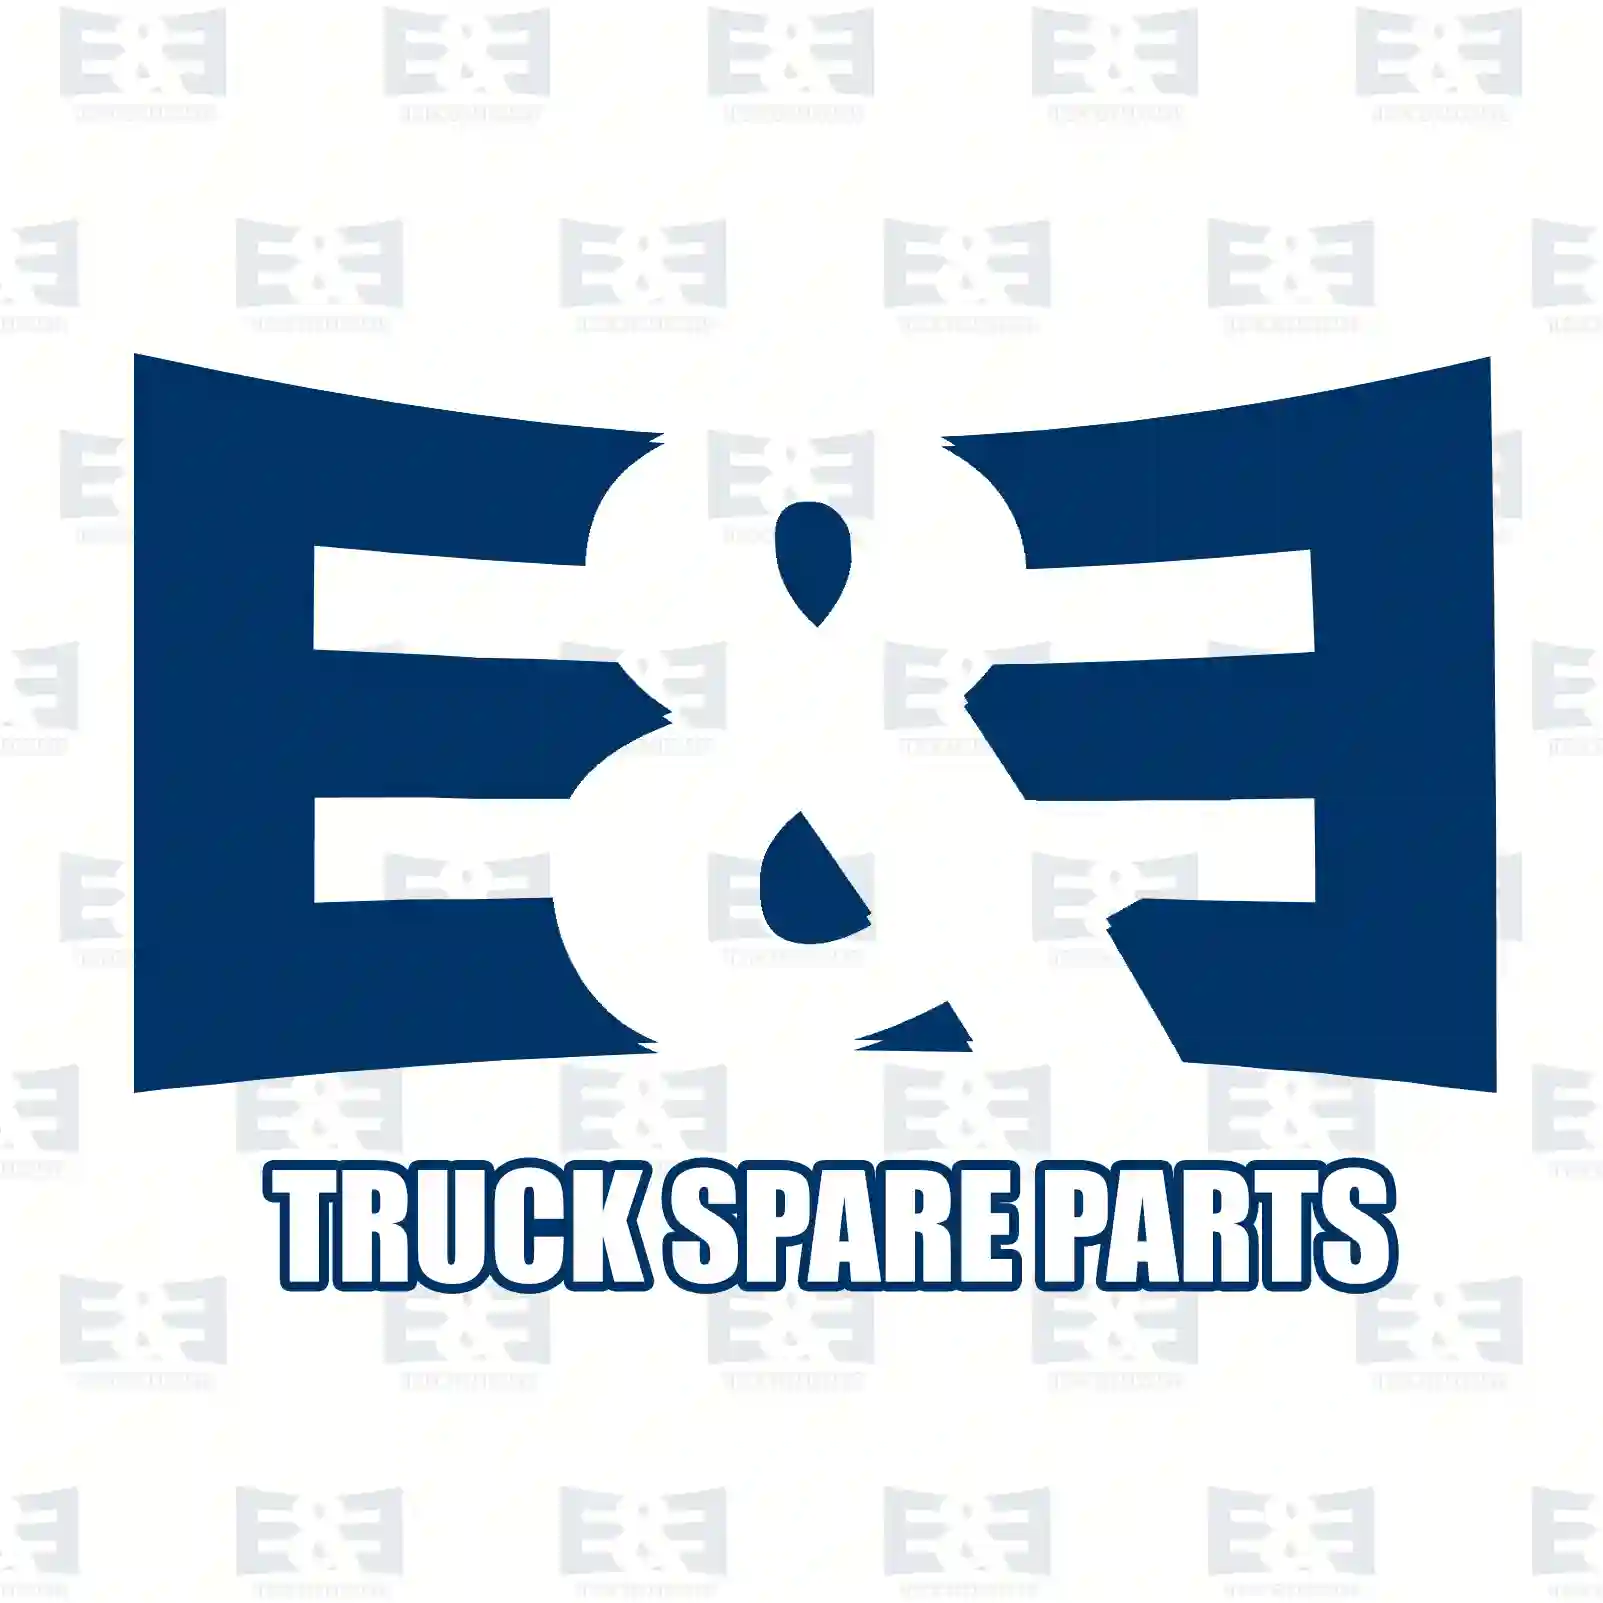 Engine mounting, front, 2E2207205, 5801283685, 60147 ||  2E2207205 E&E Truck Spare Parts | Truck Spare Parts, Auotomotive Spare Parts Engine mounting, front, 2E2207205, 5801283685, 60147 ||  2E2207205 E&E Truck Spare Parts | Truck Spare Parts, Auotomotive Spare Parts